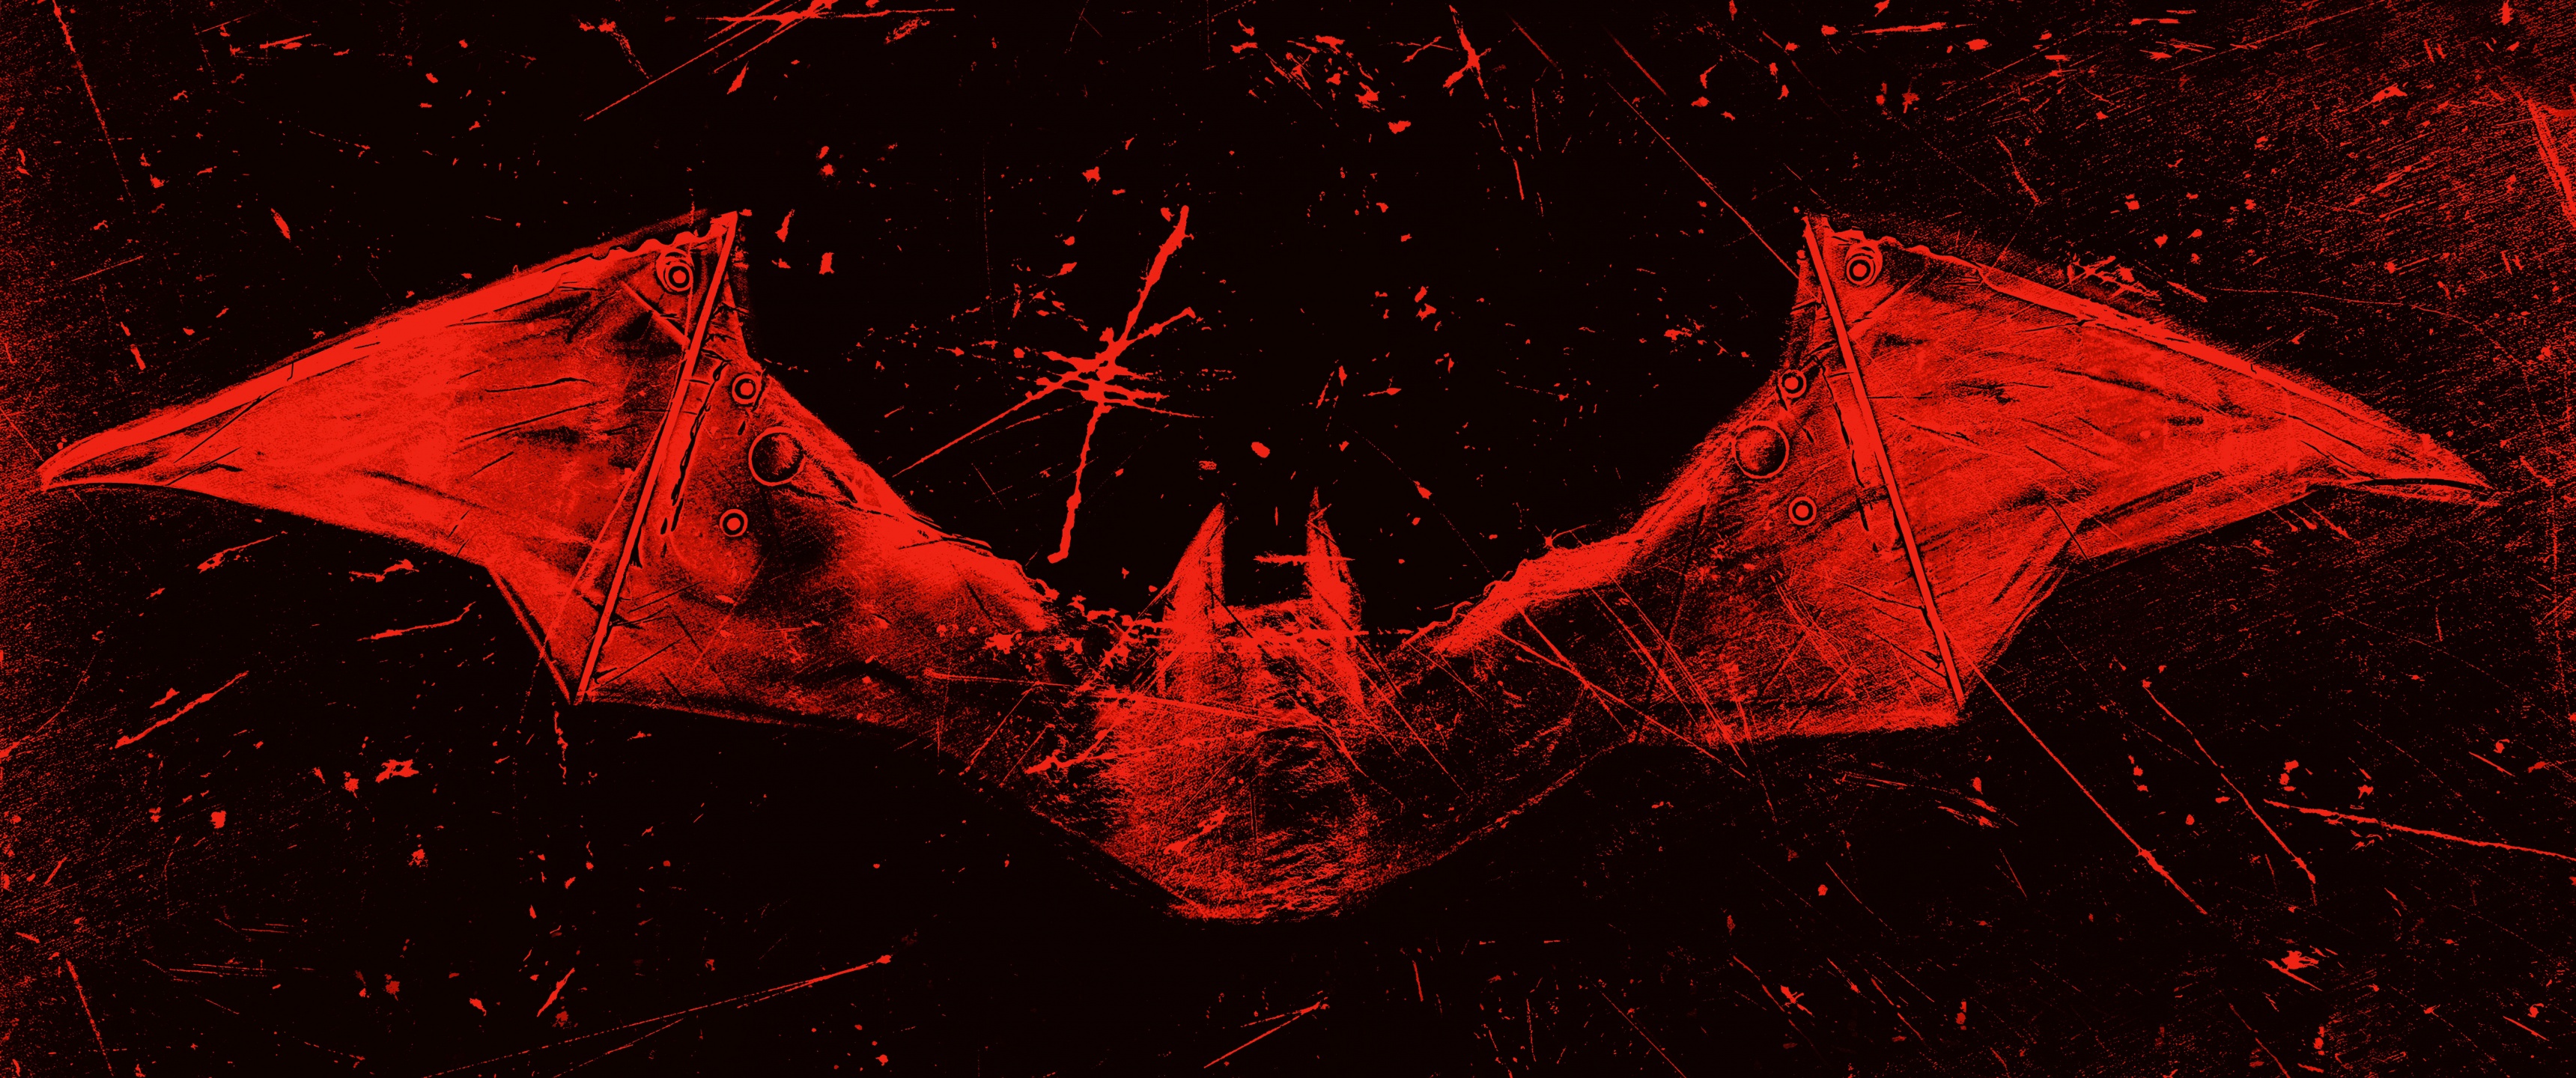 The Batman Wallpaper 4K, 2022 Movies, Red background, Dark background, Movies